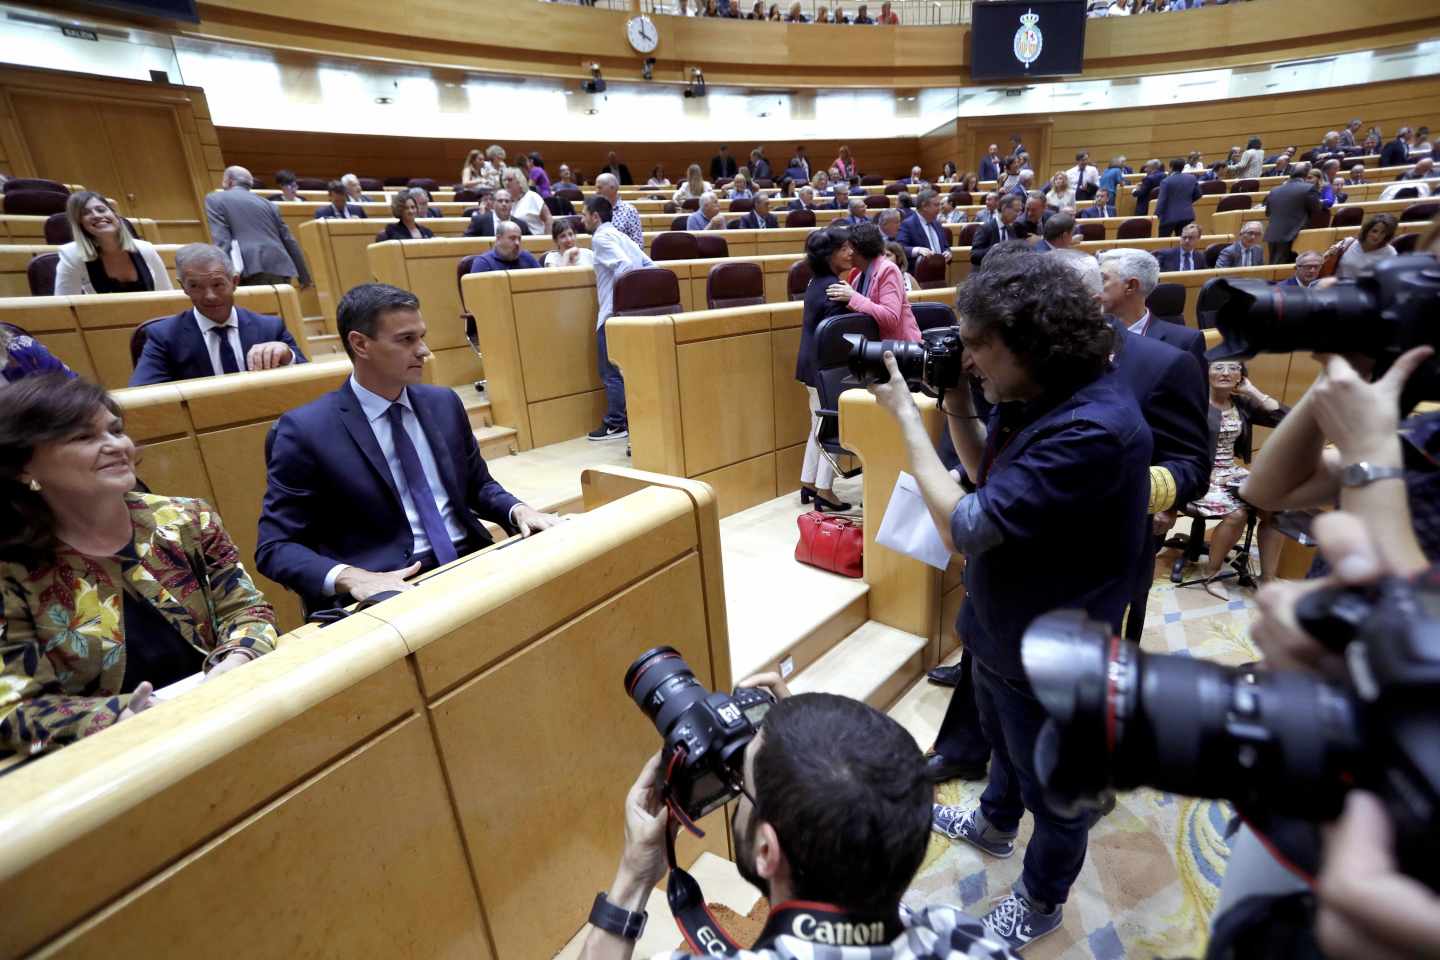 Sánchez salva a su ministra del máster pese al clamor en el PSOE para que dimita